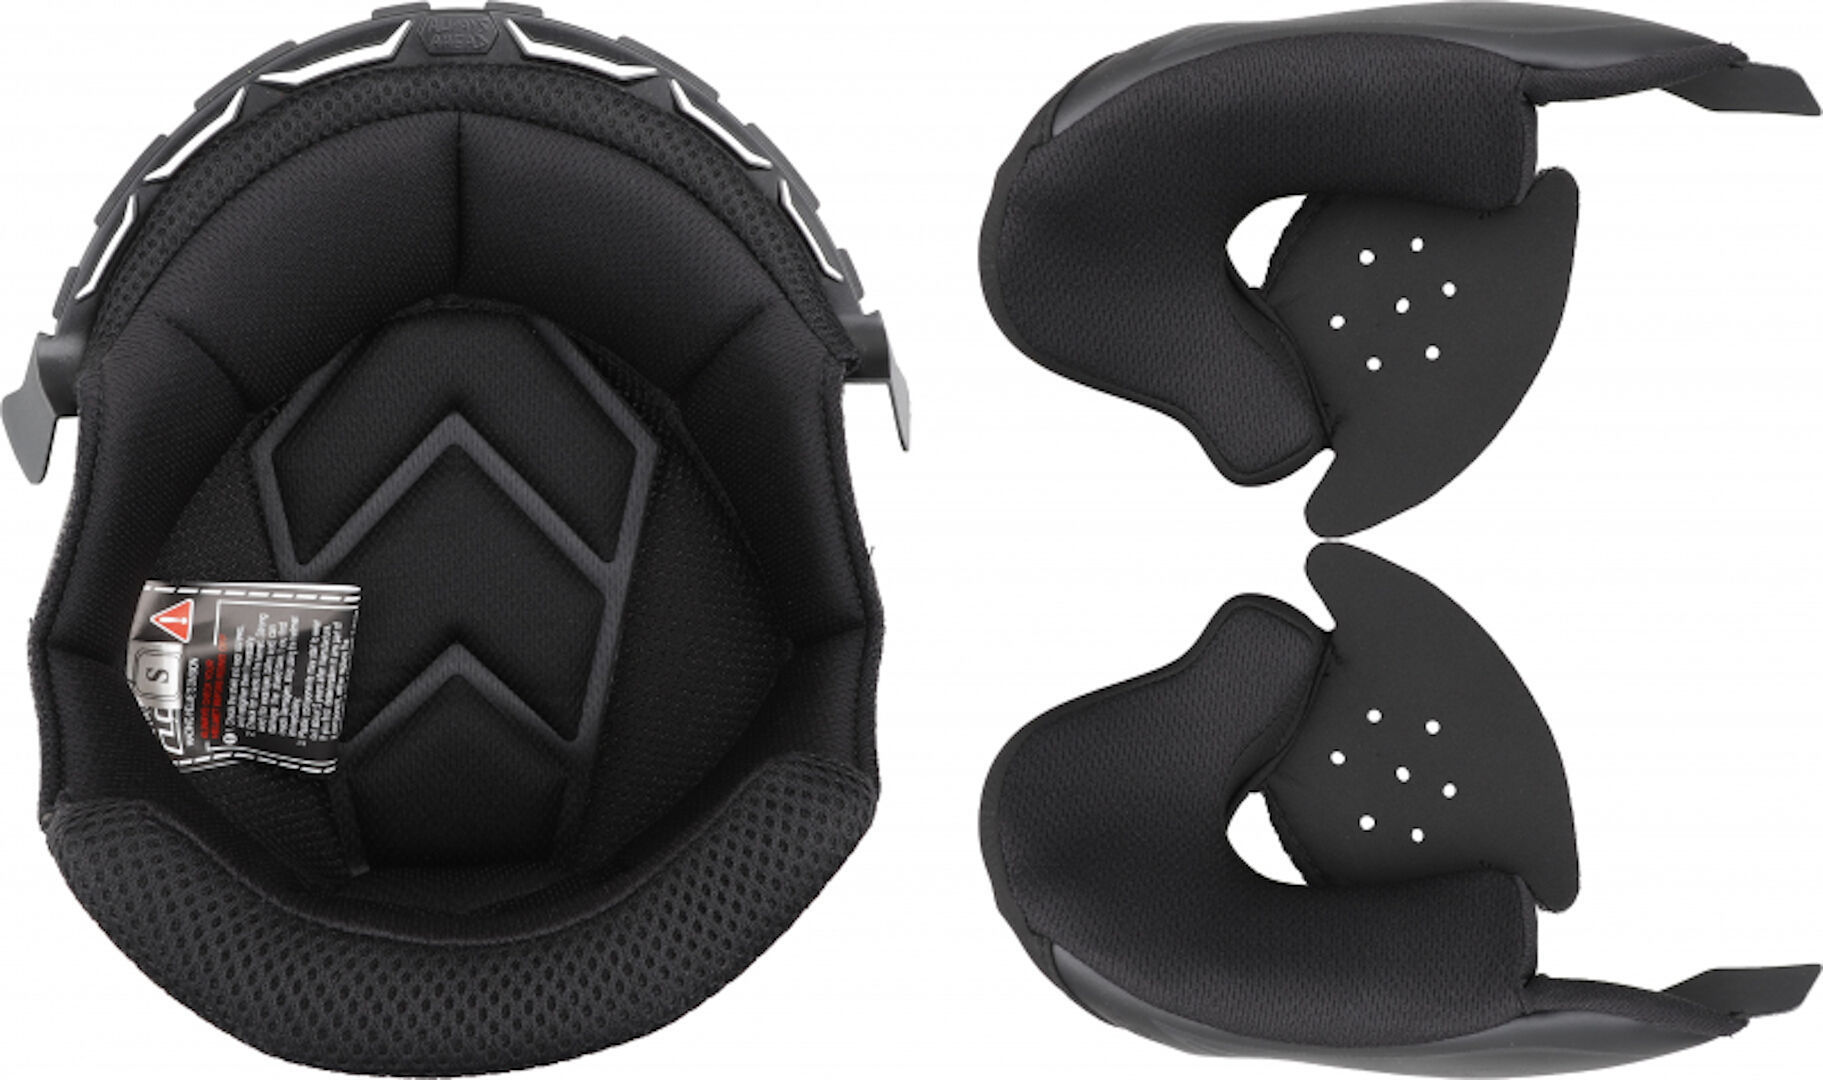 Подкладка LS2 OF600 Copter внутренняя для шлема высококачественная подкладка для шлема сверхлегкая красная съемная подкладка для шлема подкладка для шлема 27 шт компл